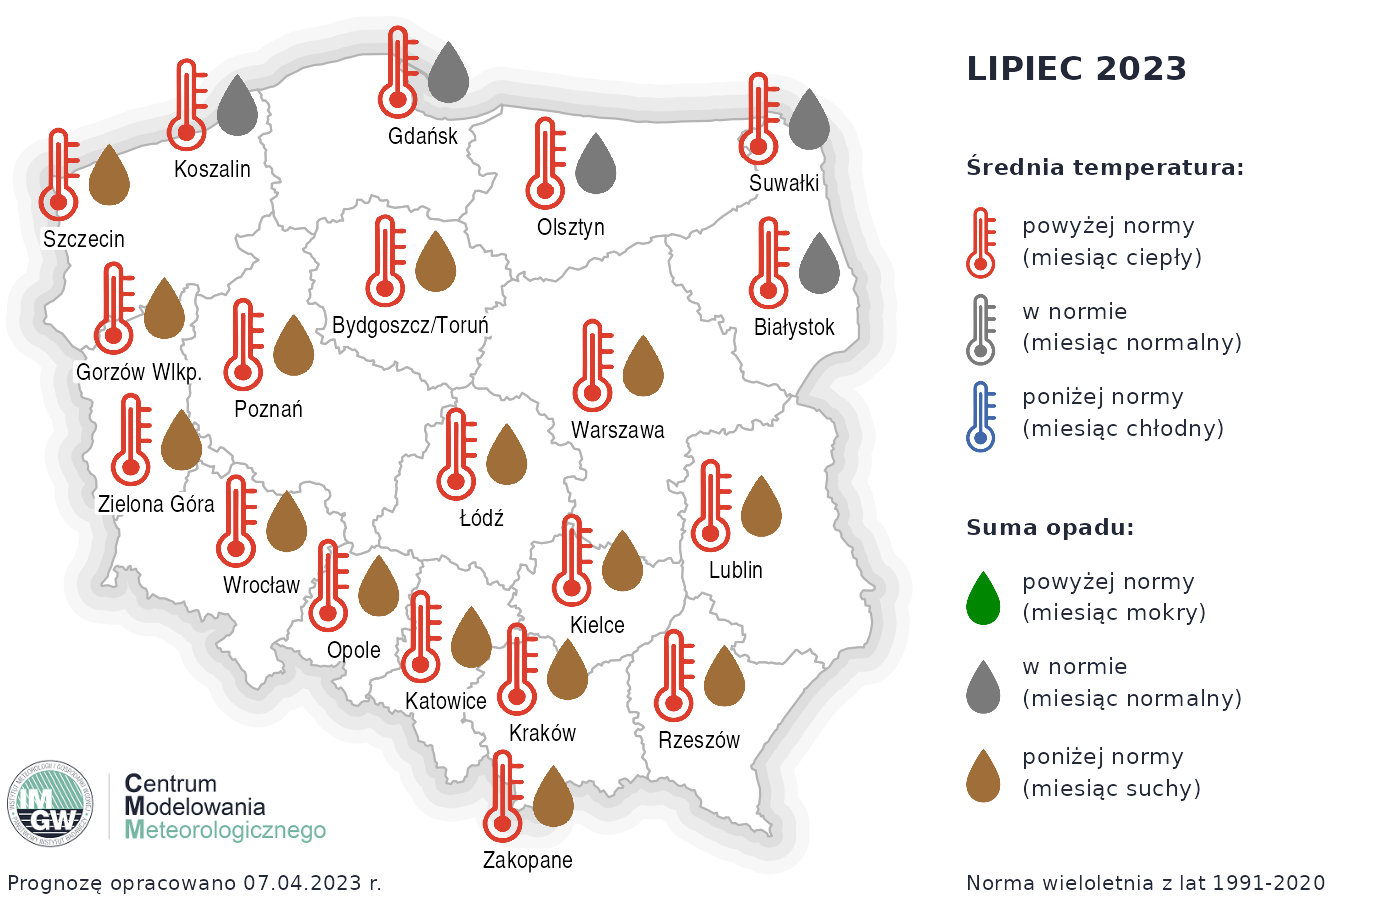 Rys. 3. Prognoza średniej miesięcznej temperatury powietrza i miesięcznej sumy opadów atmosferycznych na lipiec 2023 r. dla wybranych miast w Polsce